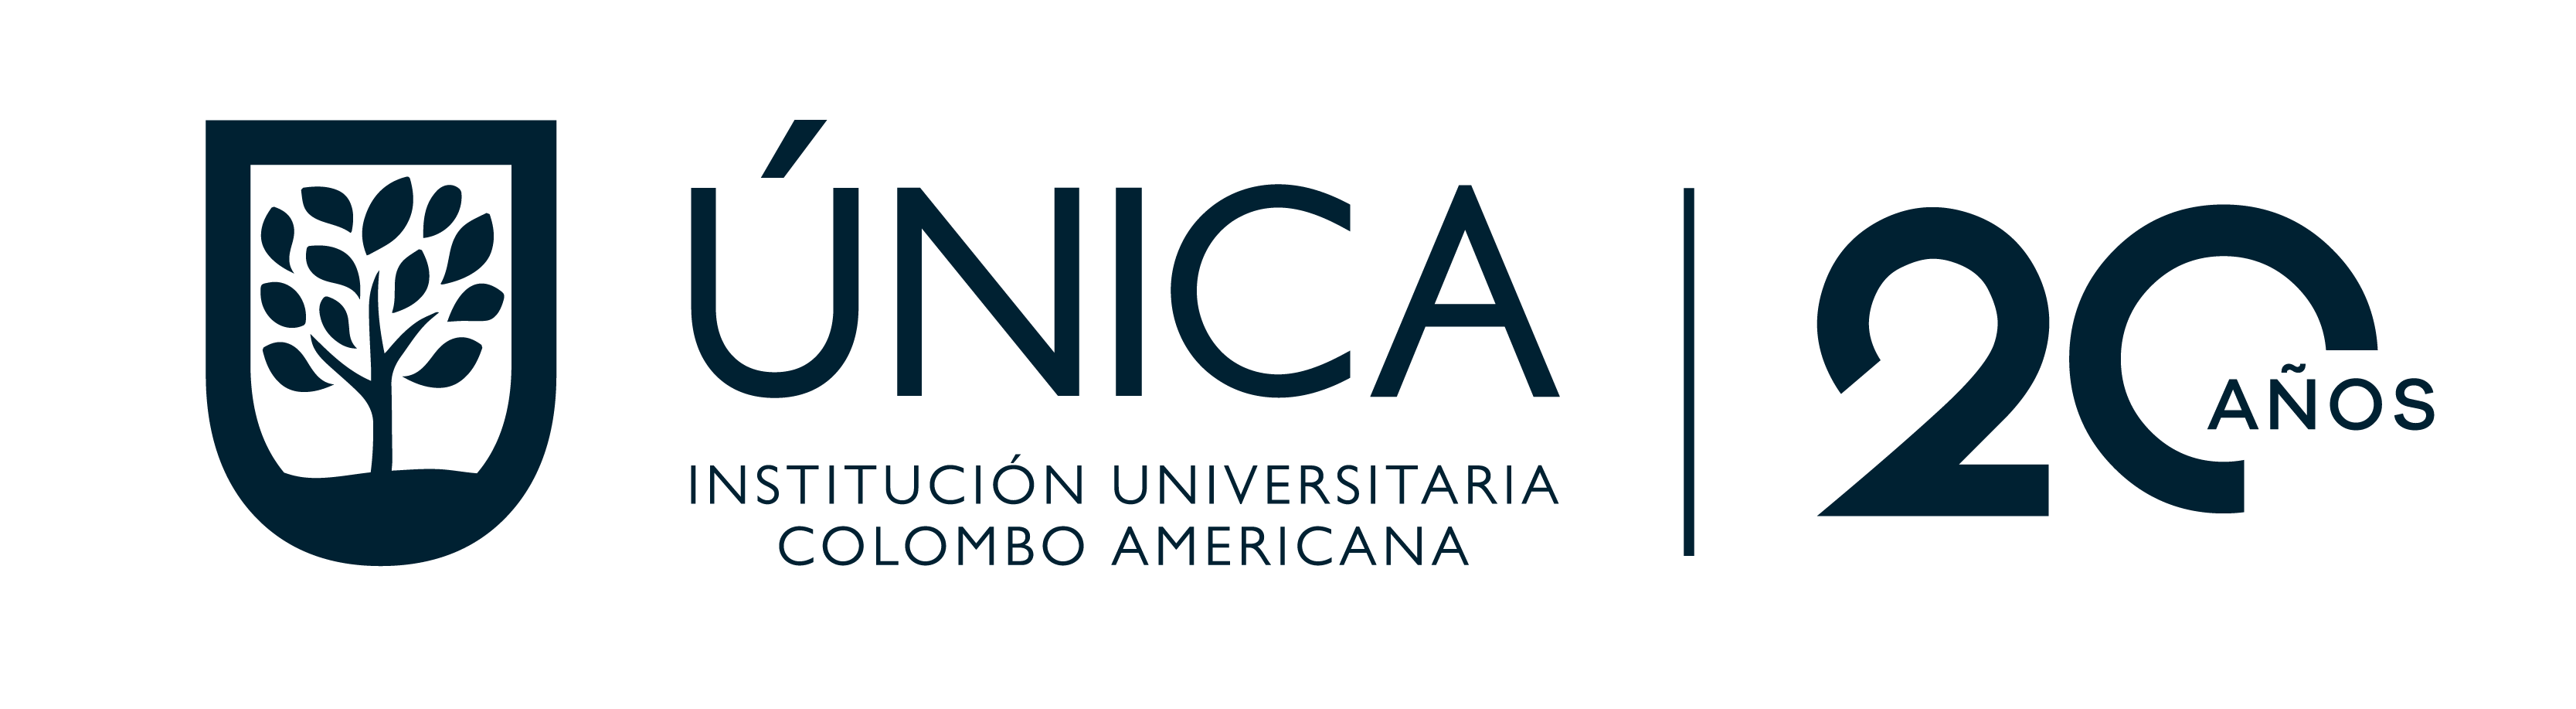 콜롬보 아메리카나 대학교: ÚNICA